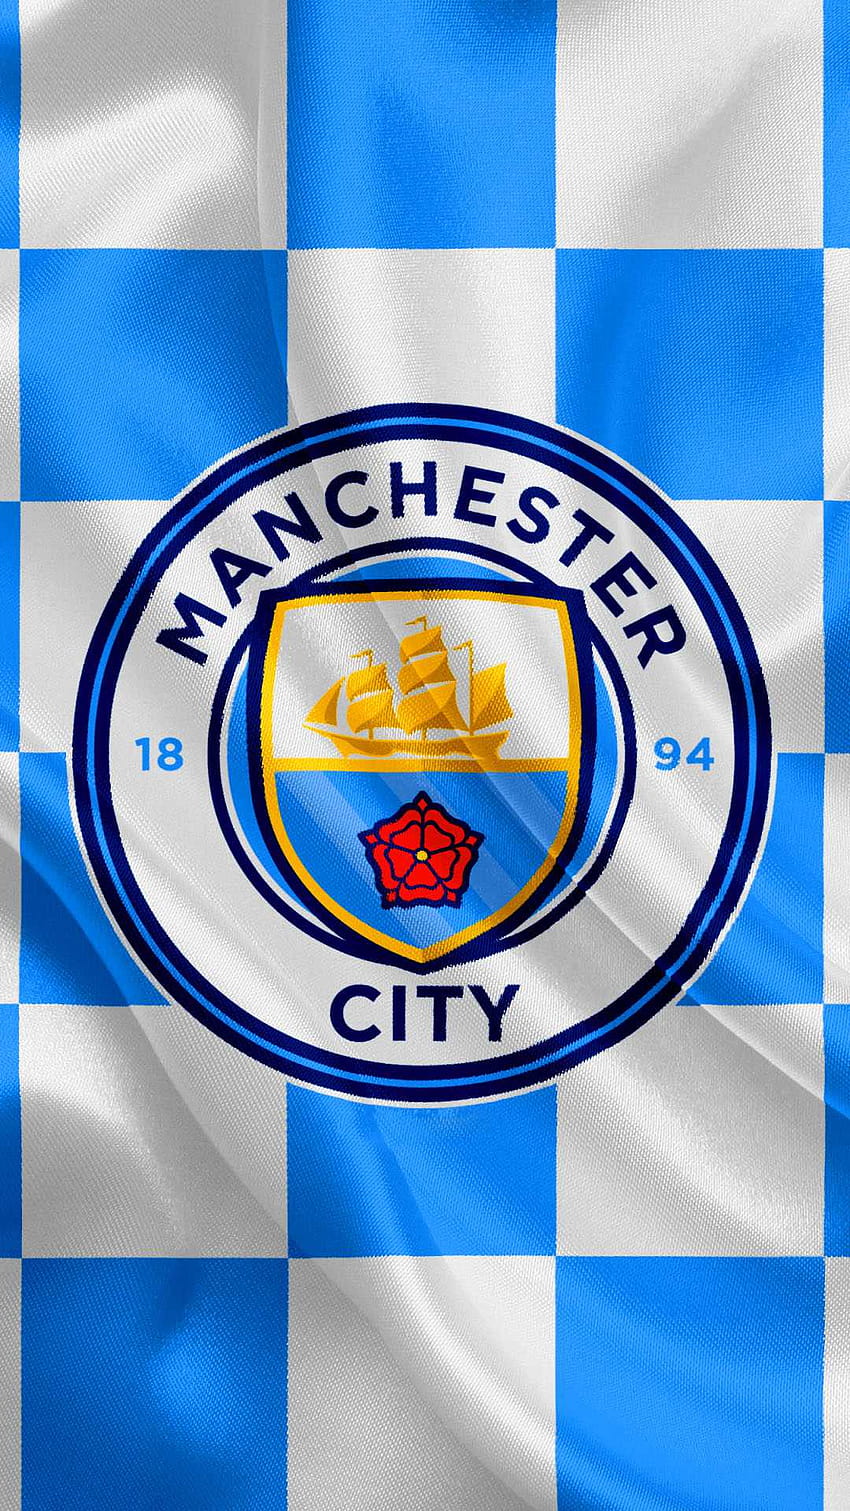 Logo câu lạc bộ bóng đá Premier league Manchester City FC 2K tải xuống hình  nền